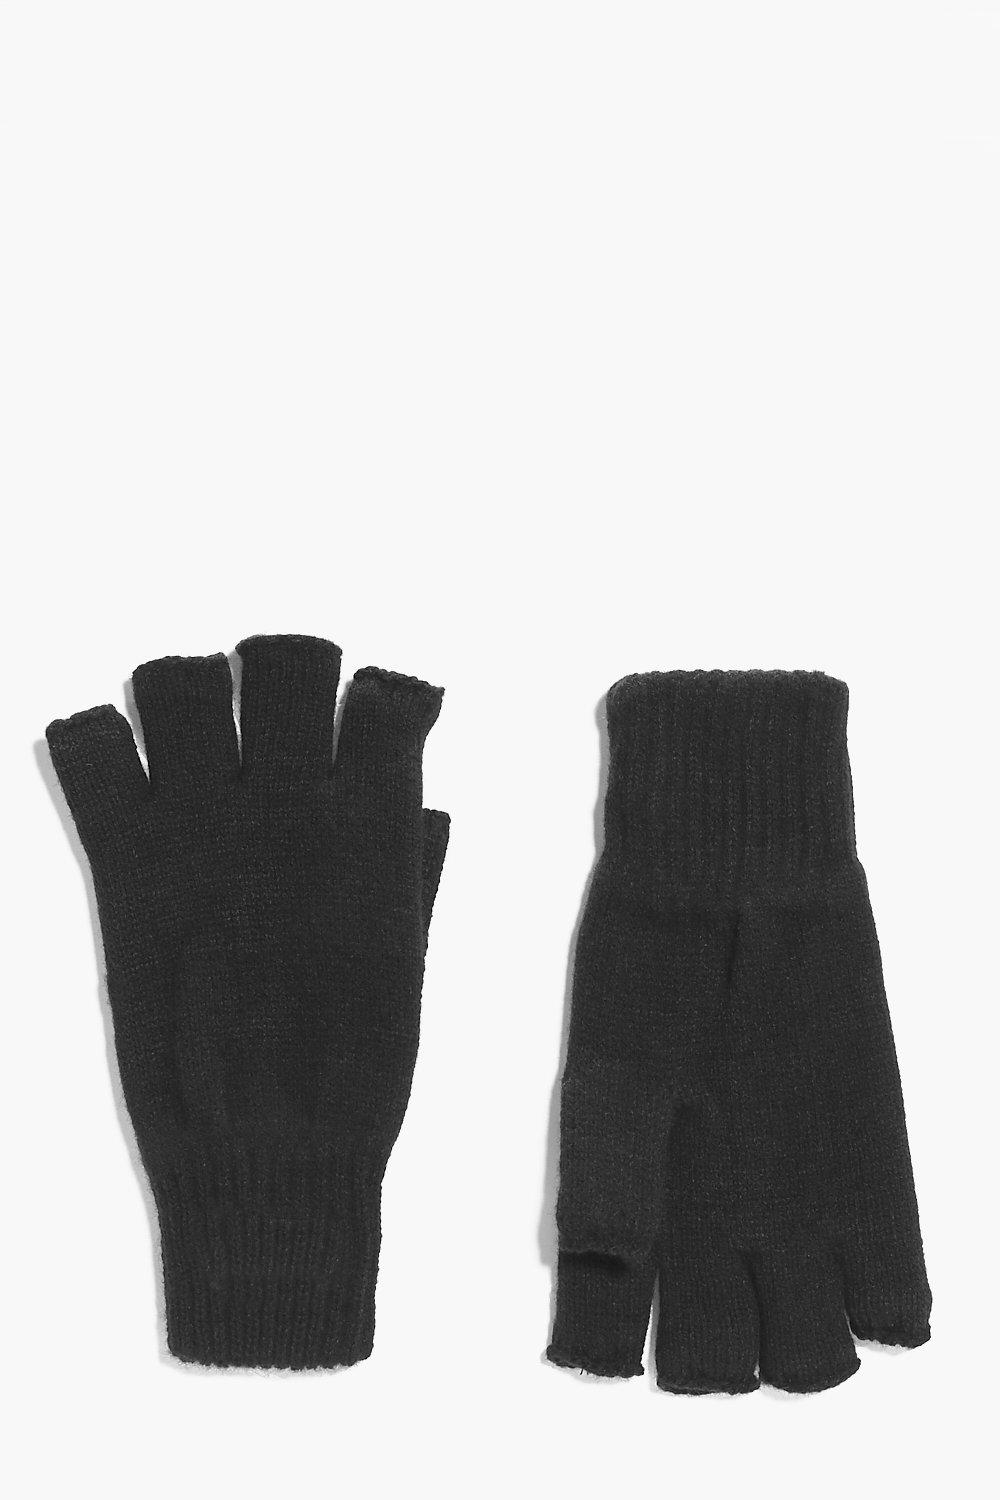 fingerless gloves dublin